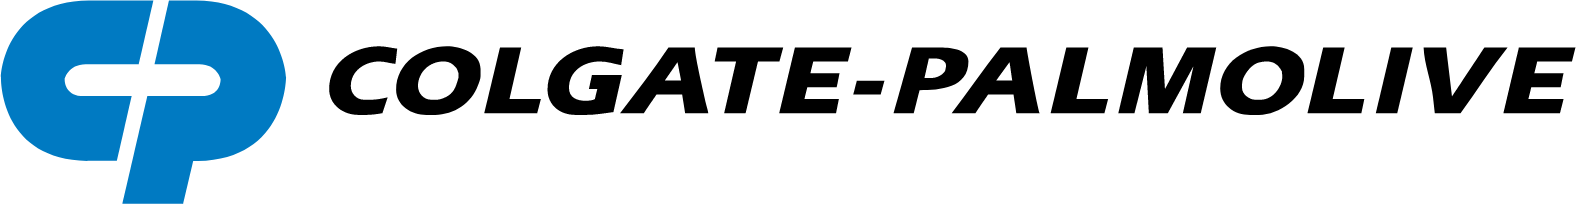 Colgate-Palmolive logo large (transparent PNG)